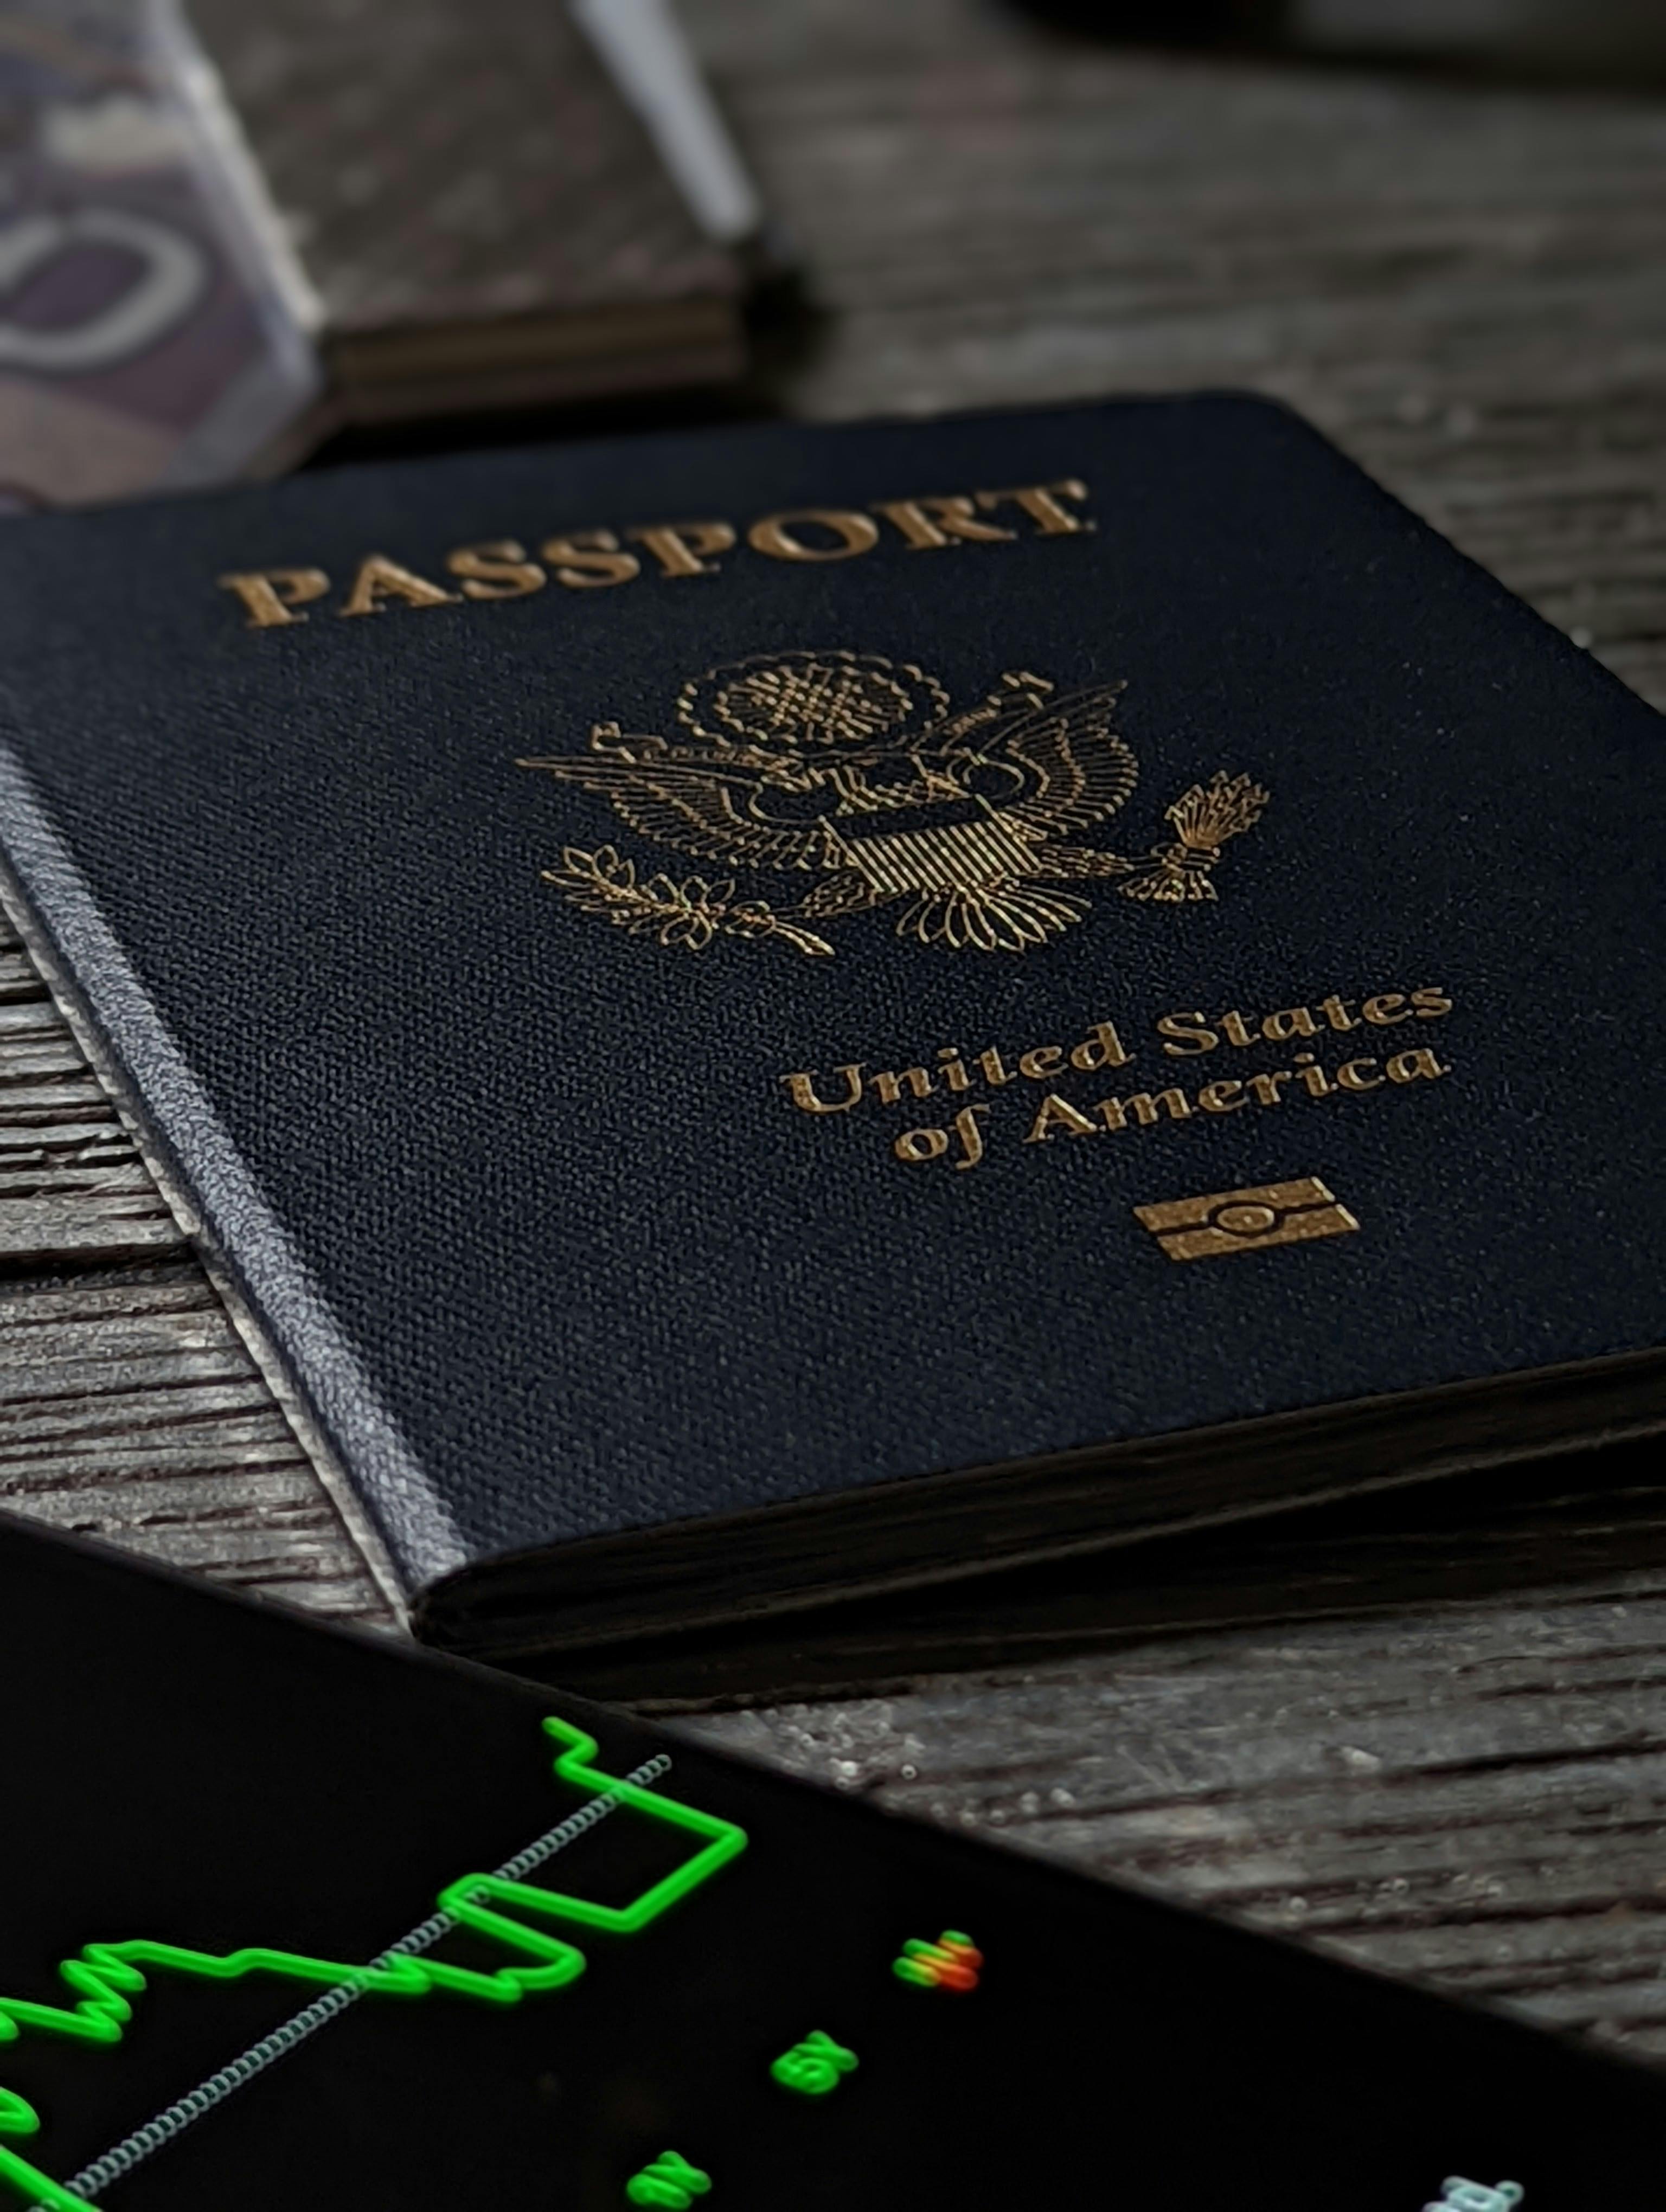 passport status tracking